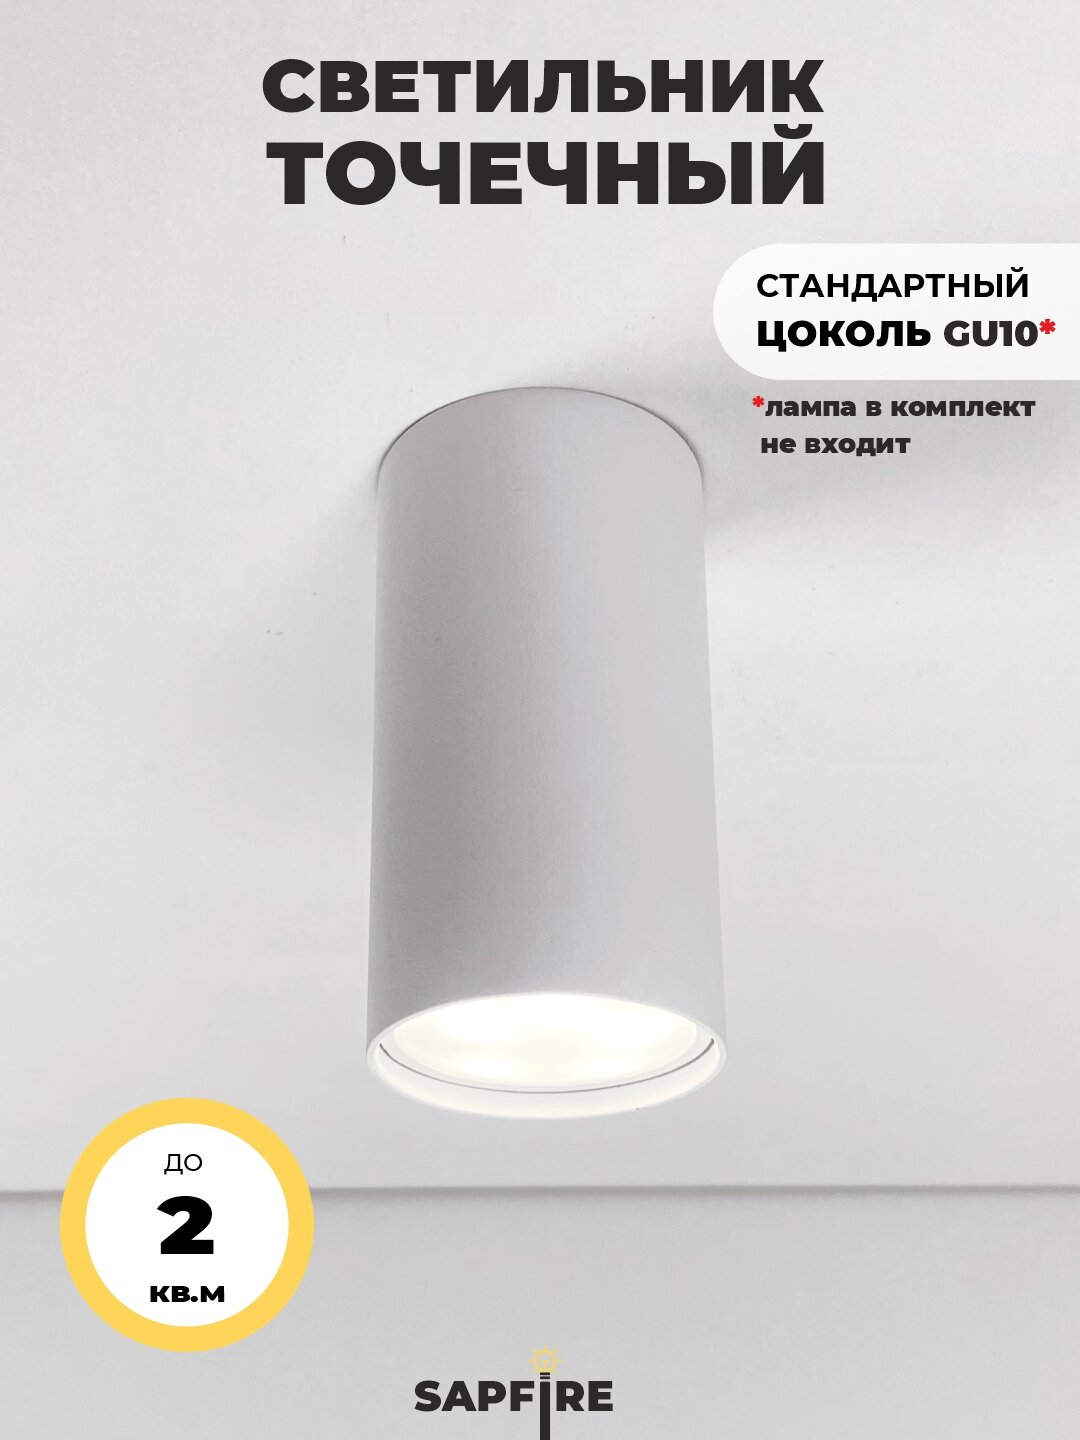 Светильник точечный потолочный встраиваемый Sapfire, 50 Вт, цвет: белый